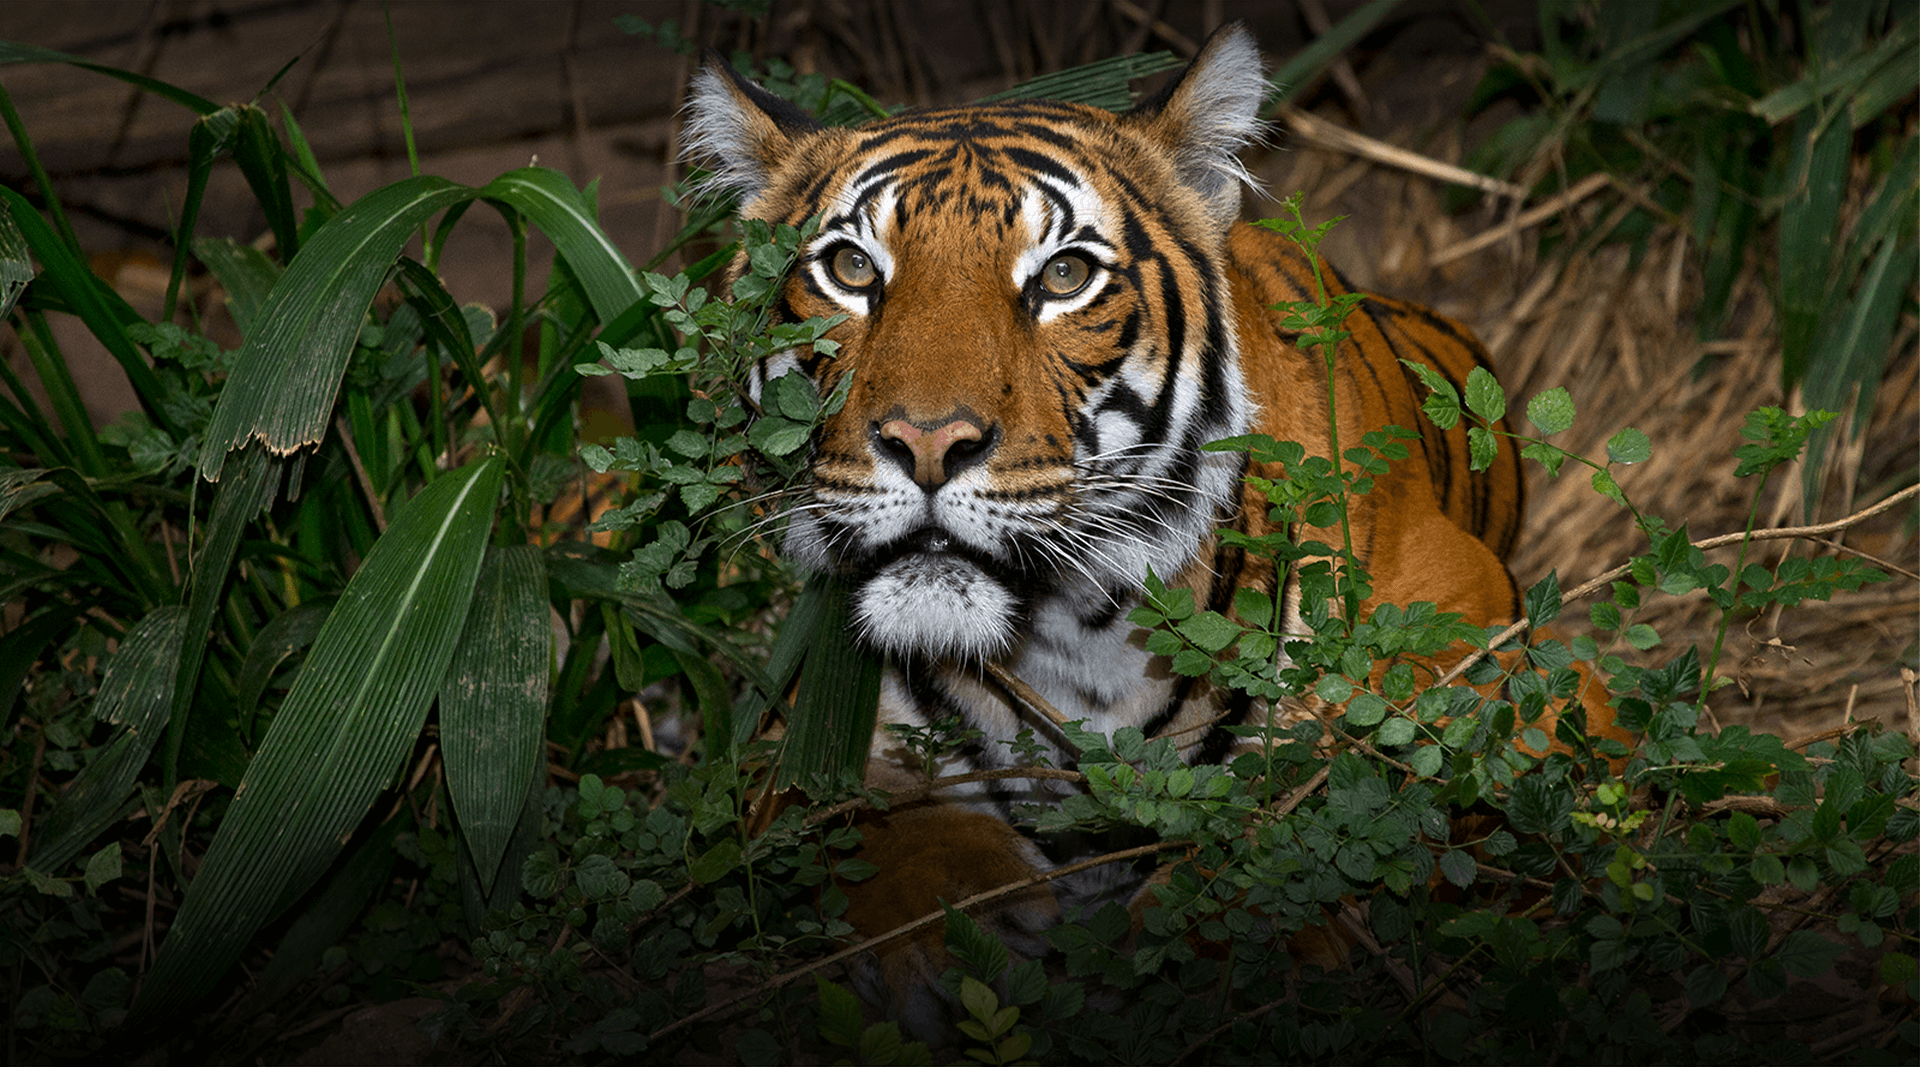 Tiger looking at the camaera.